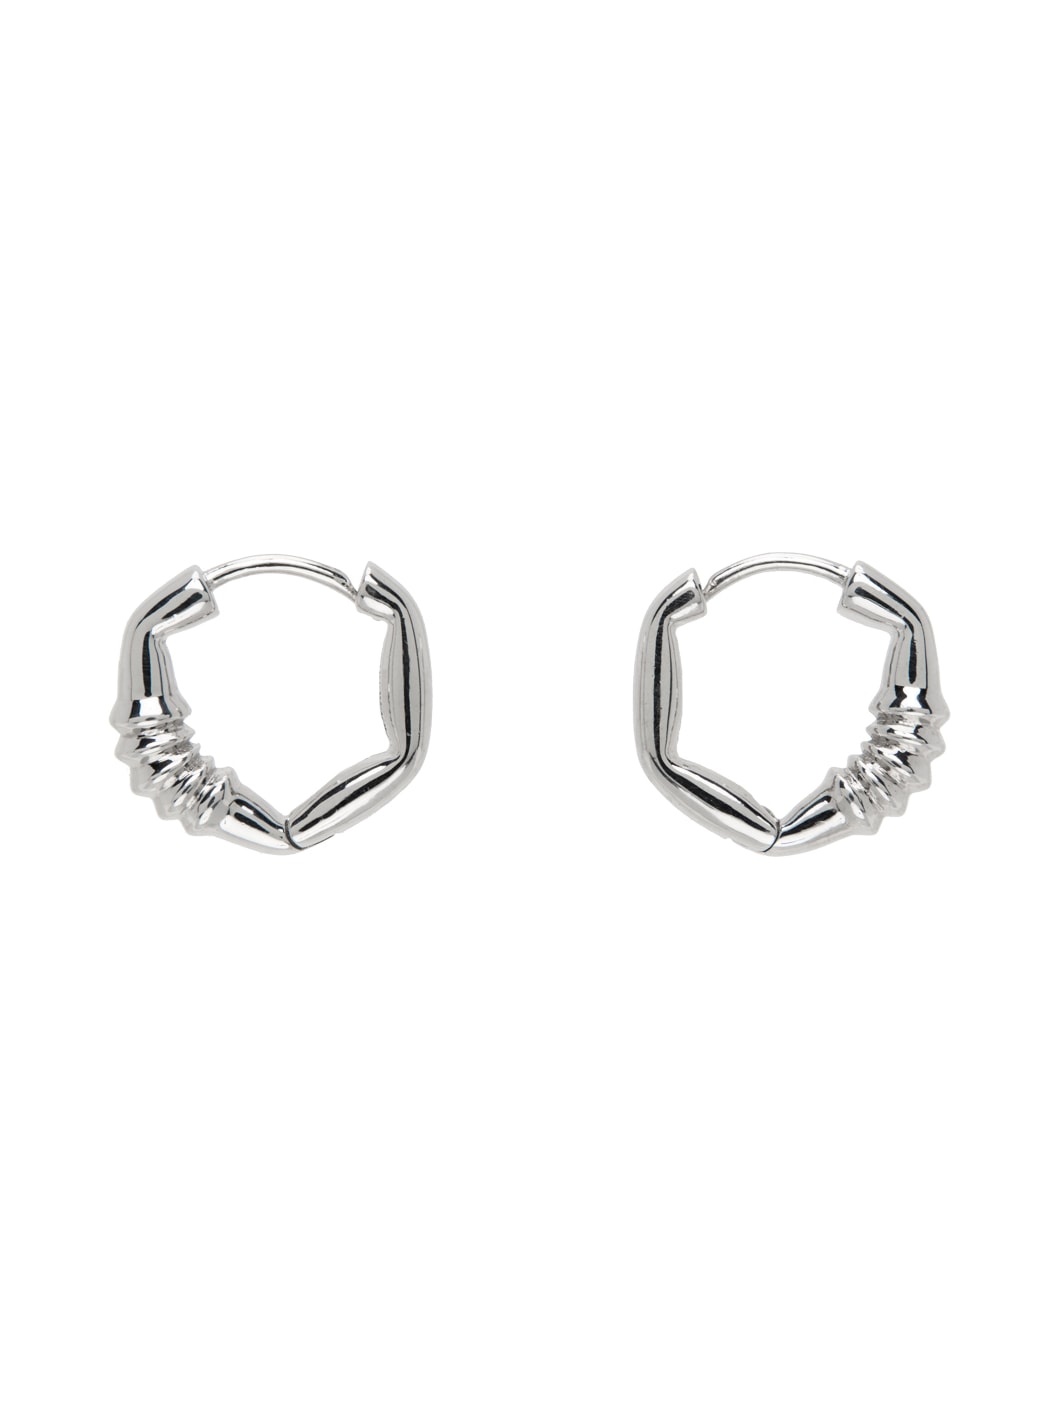 Silver Hoop Earrings - 1